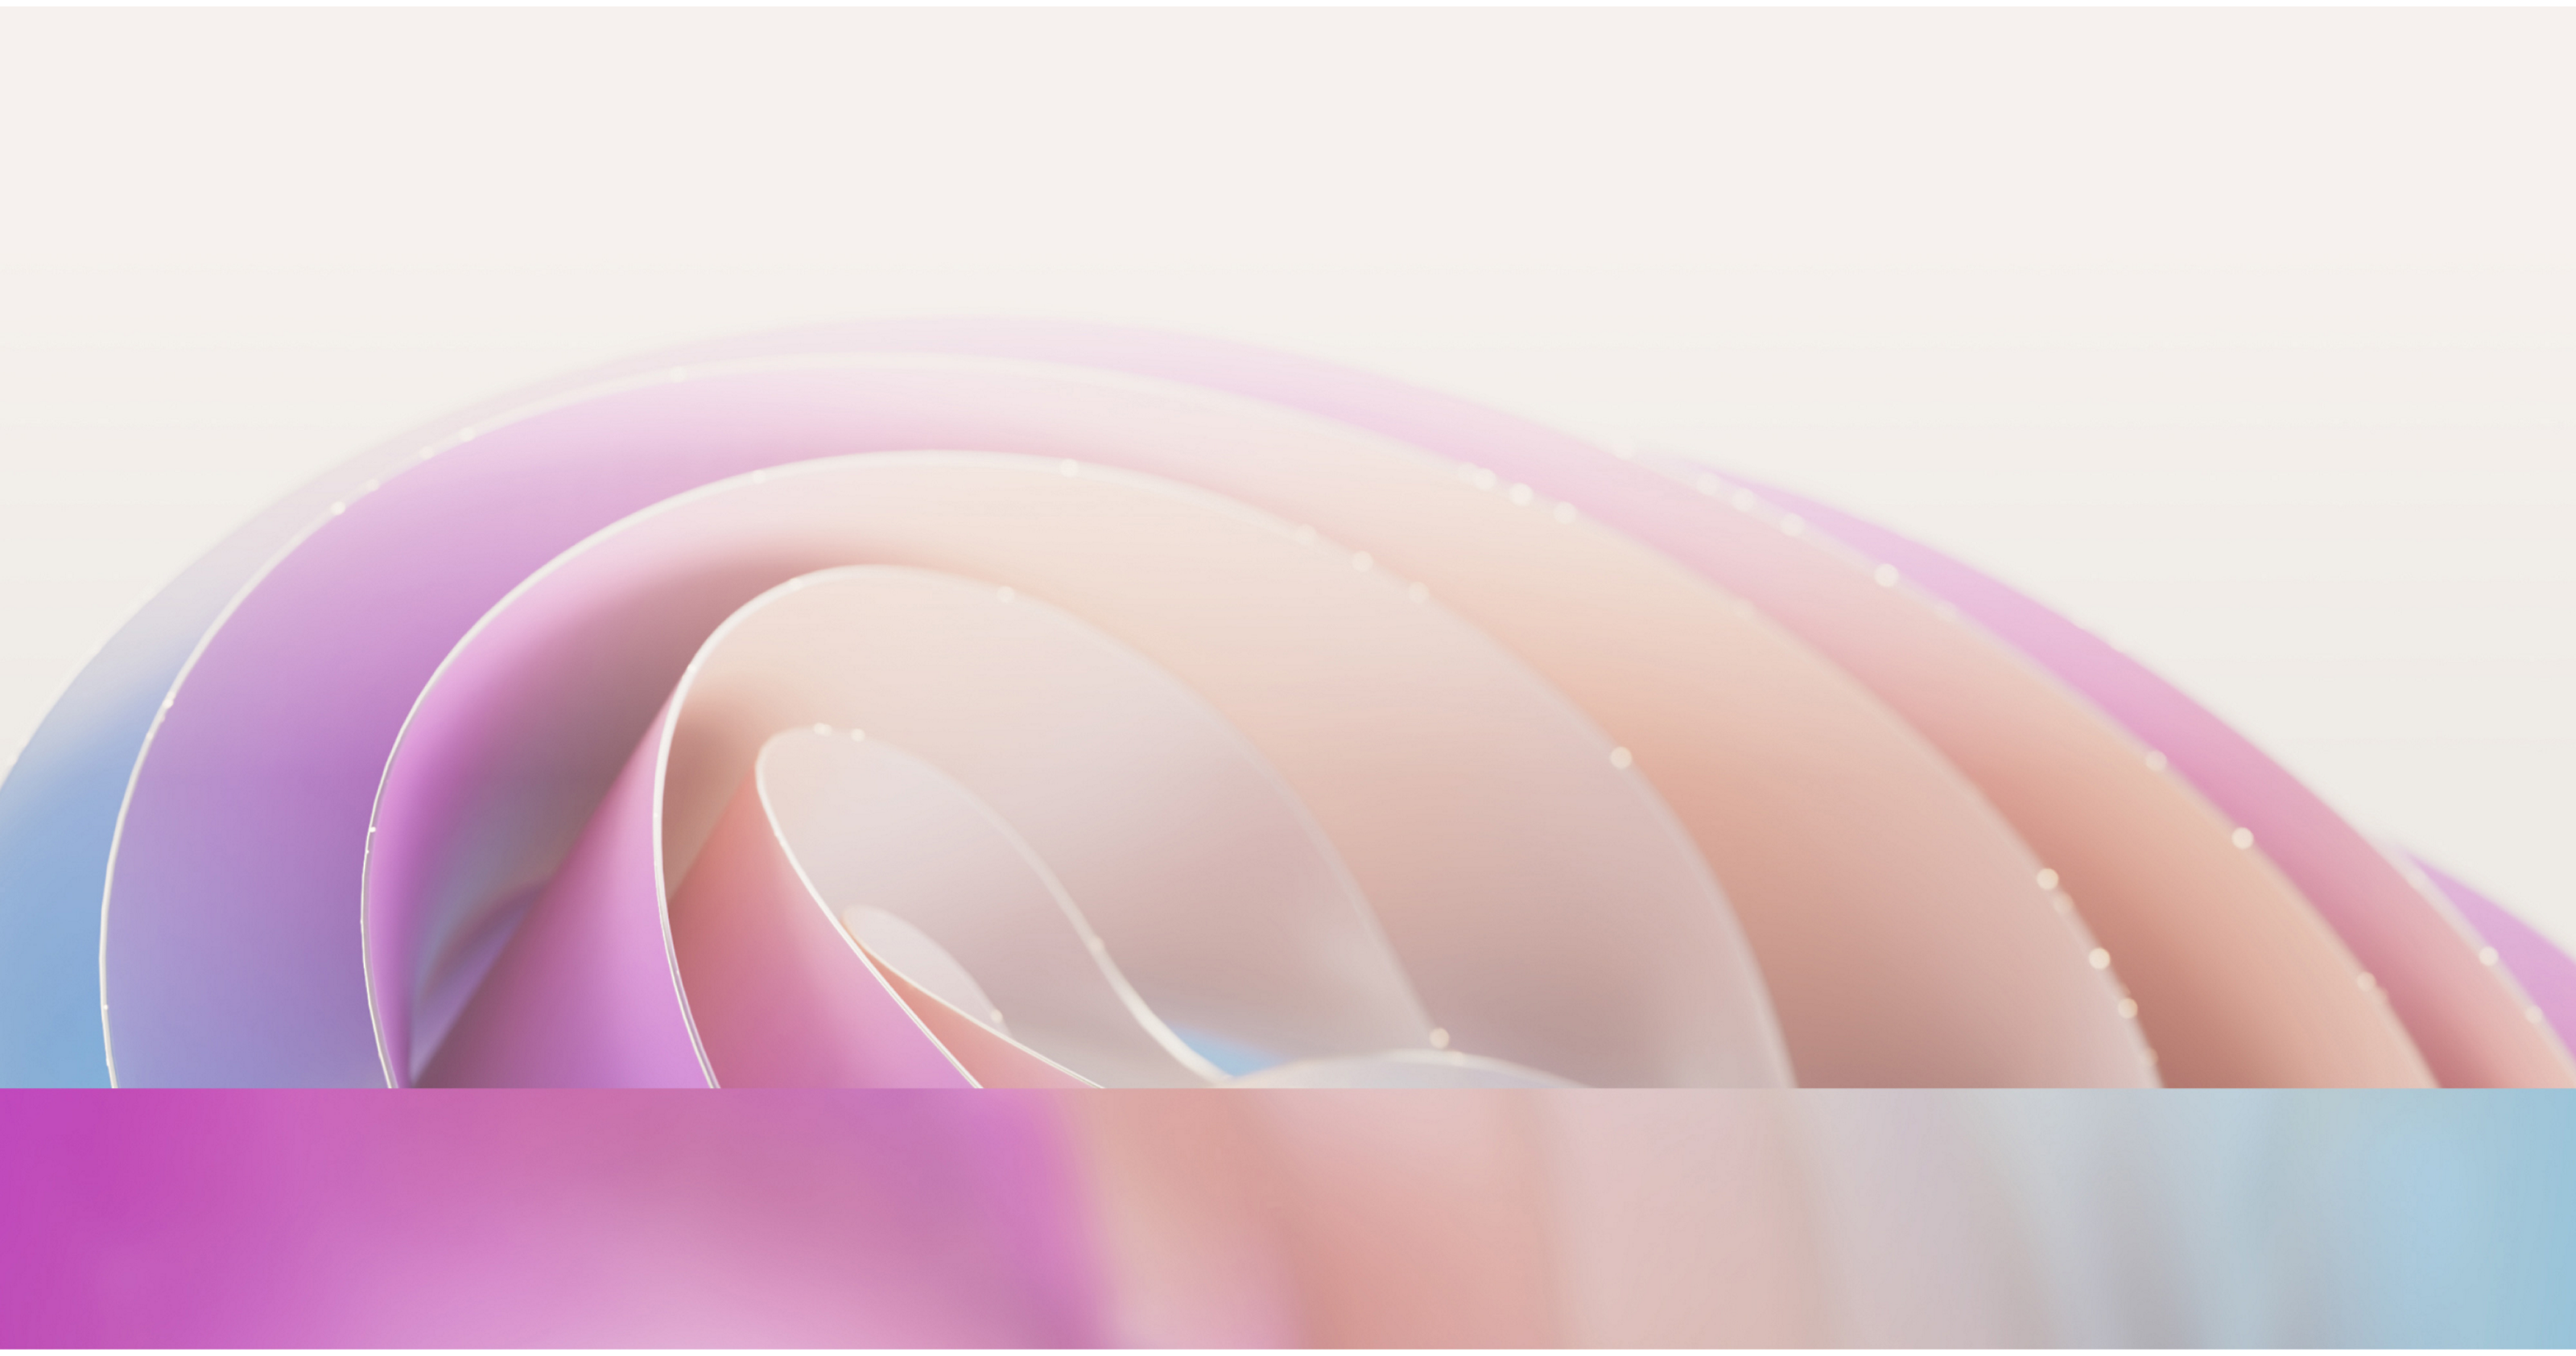 Arrière-plan abstrait avec des couches douces en forme de vagues dans des tons rose pastel, violet et bleu avec un effet de mise au point lumineux et doux.